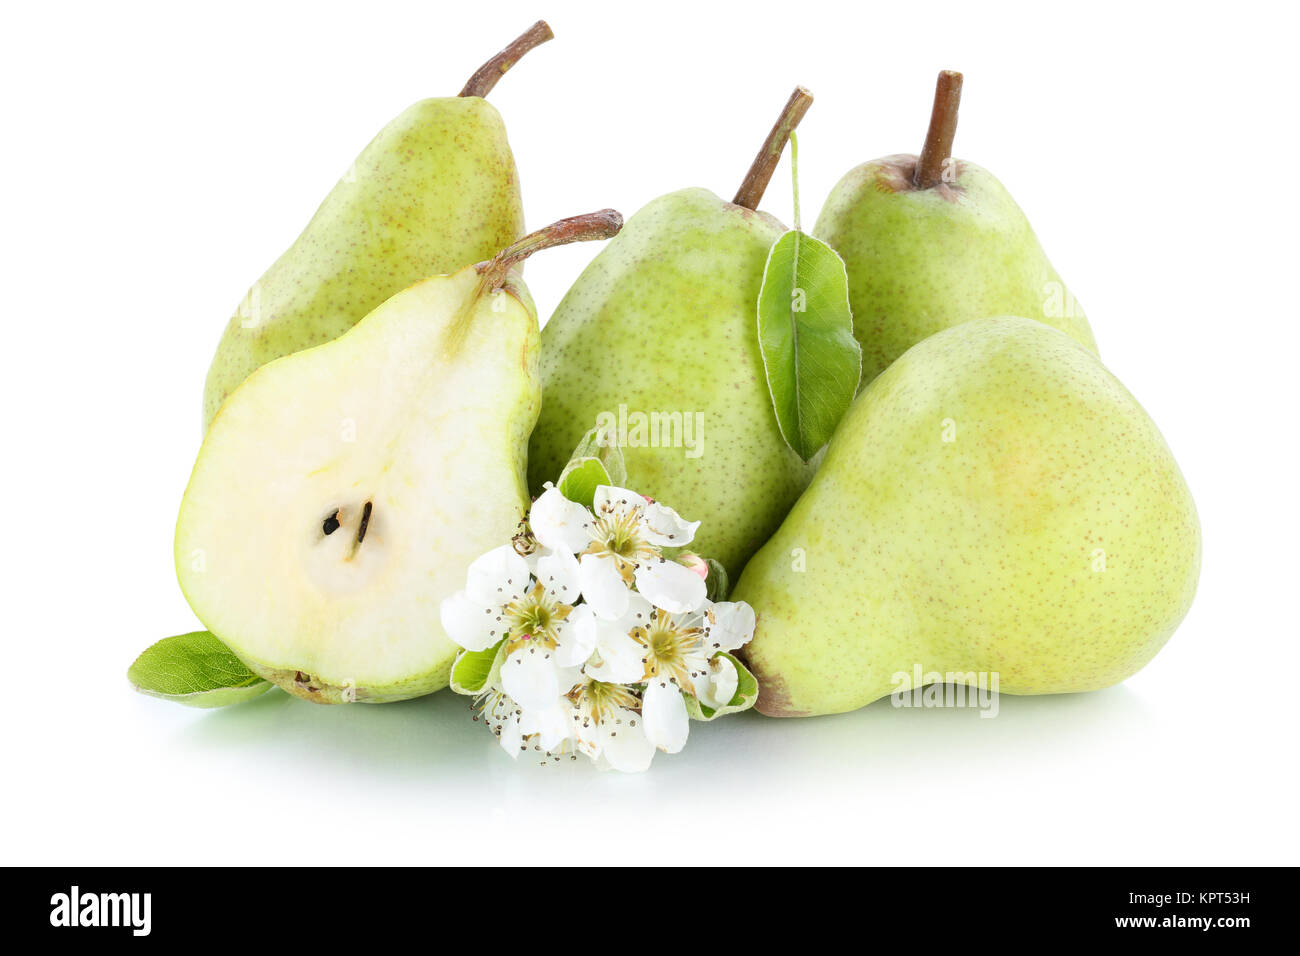 Birnen Birne grün geschnitten Früchte Obst Freisteller freigestellt isoliert vor einem weissen Hintergrund Stock Photo